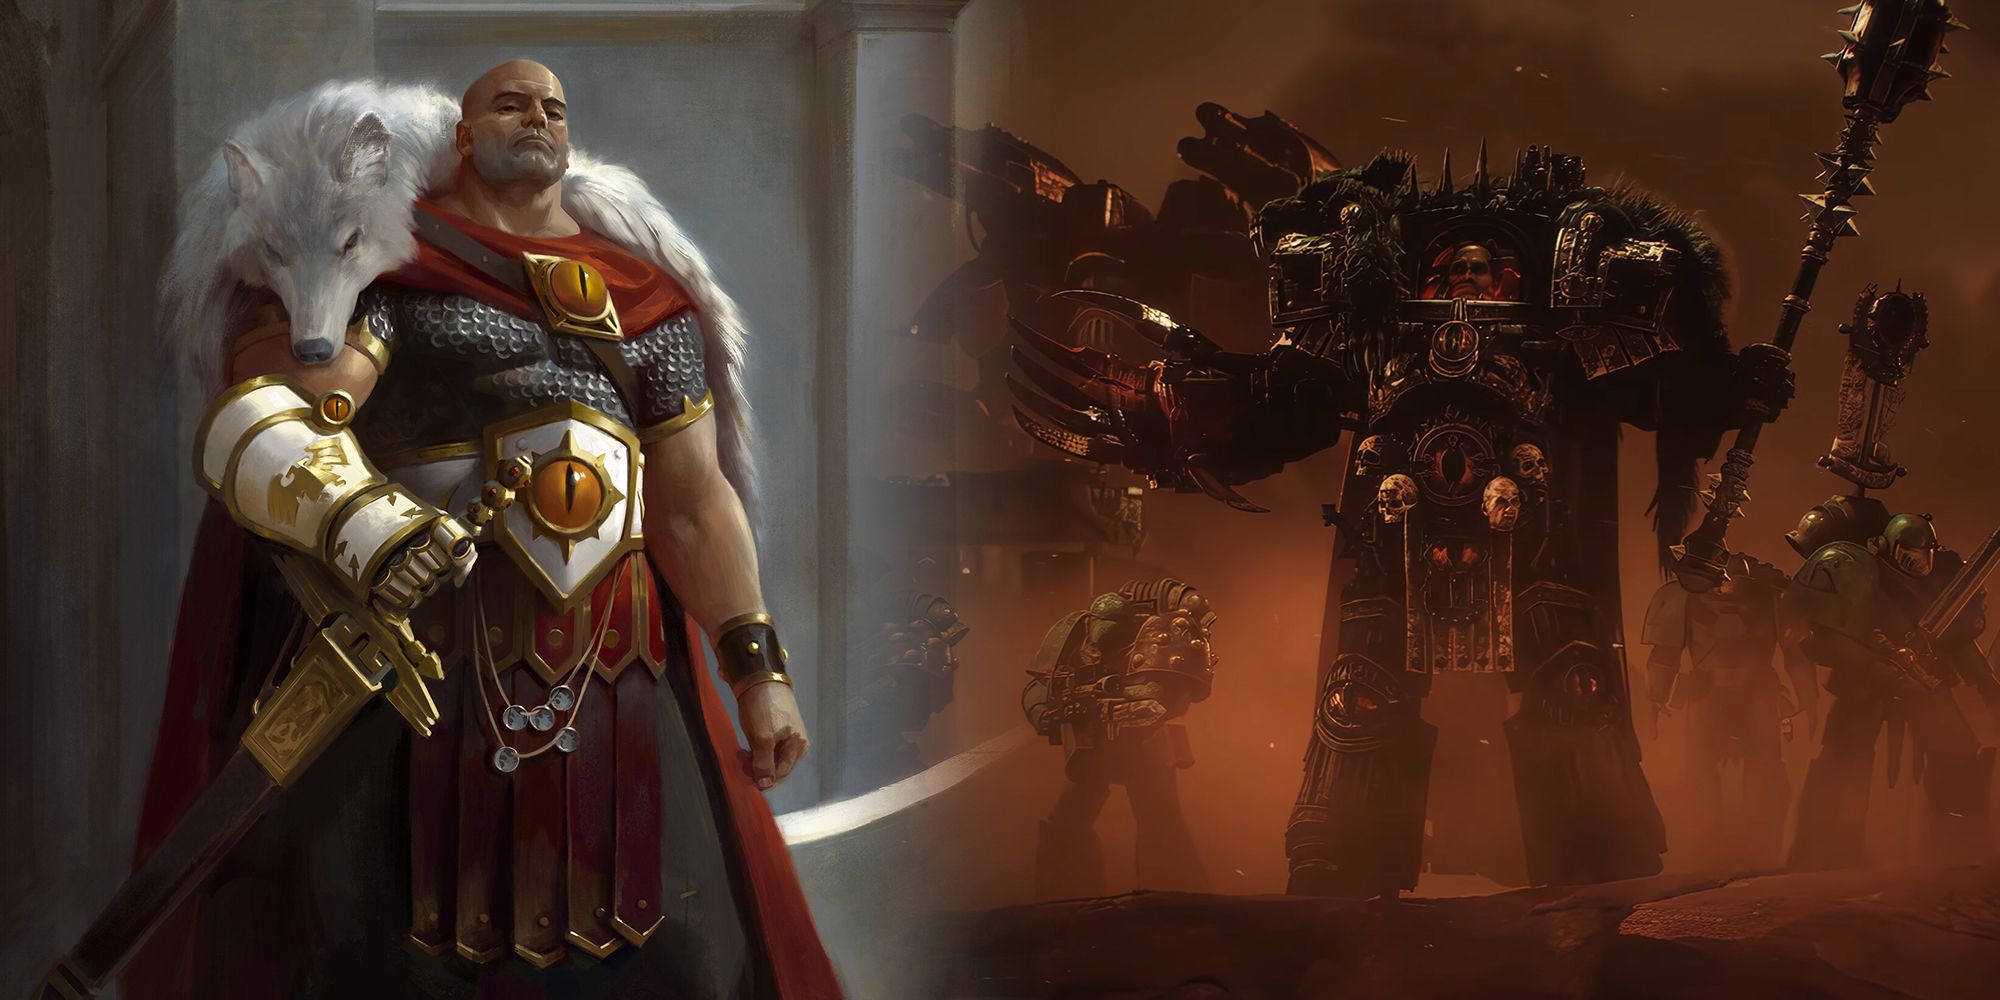 Warhammer 40k - Due Immagini Mostrando Horus Prima della Corruzione del Caos e Dopo